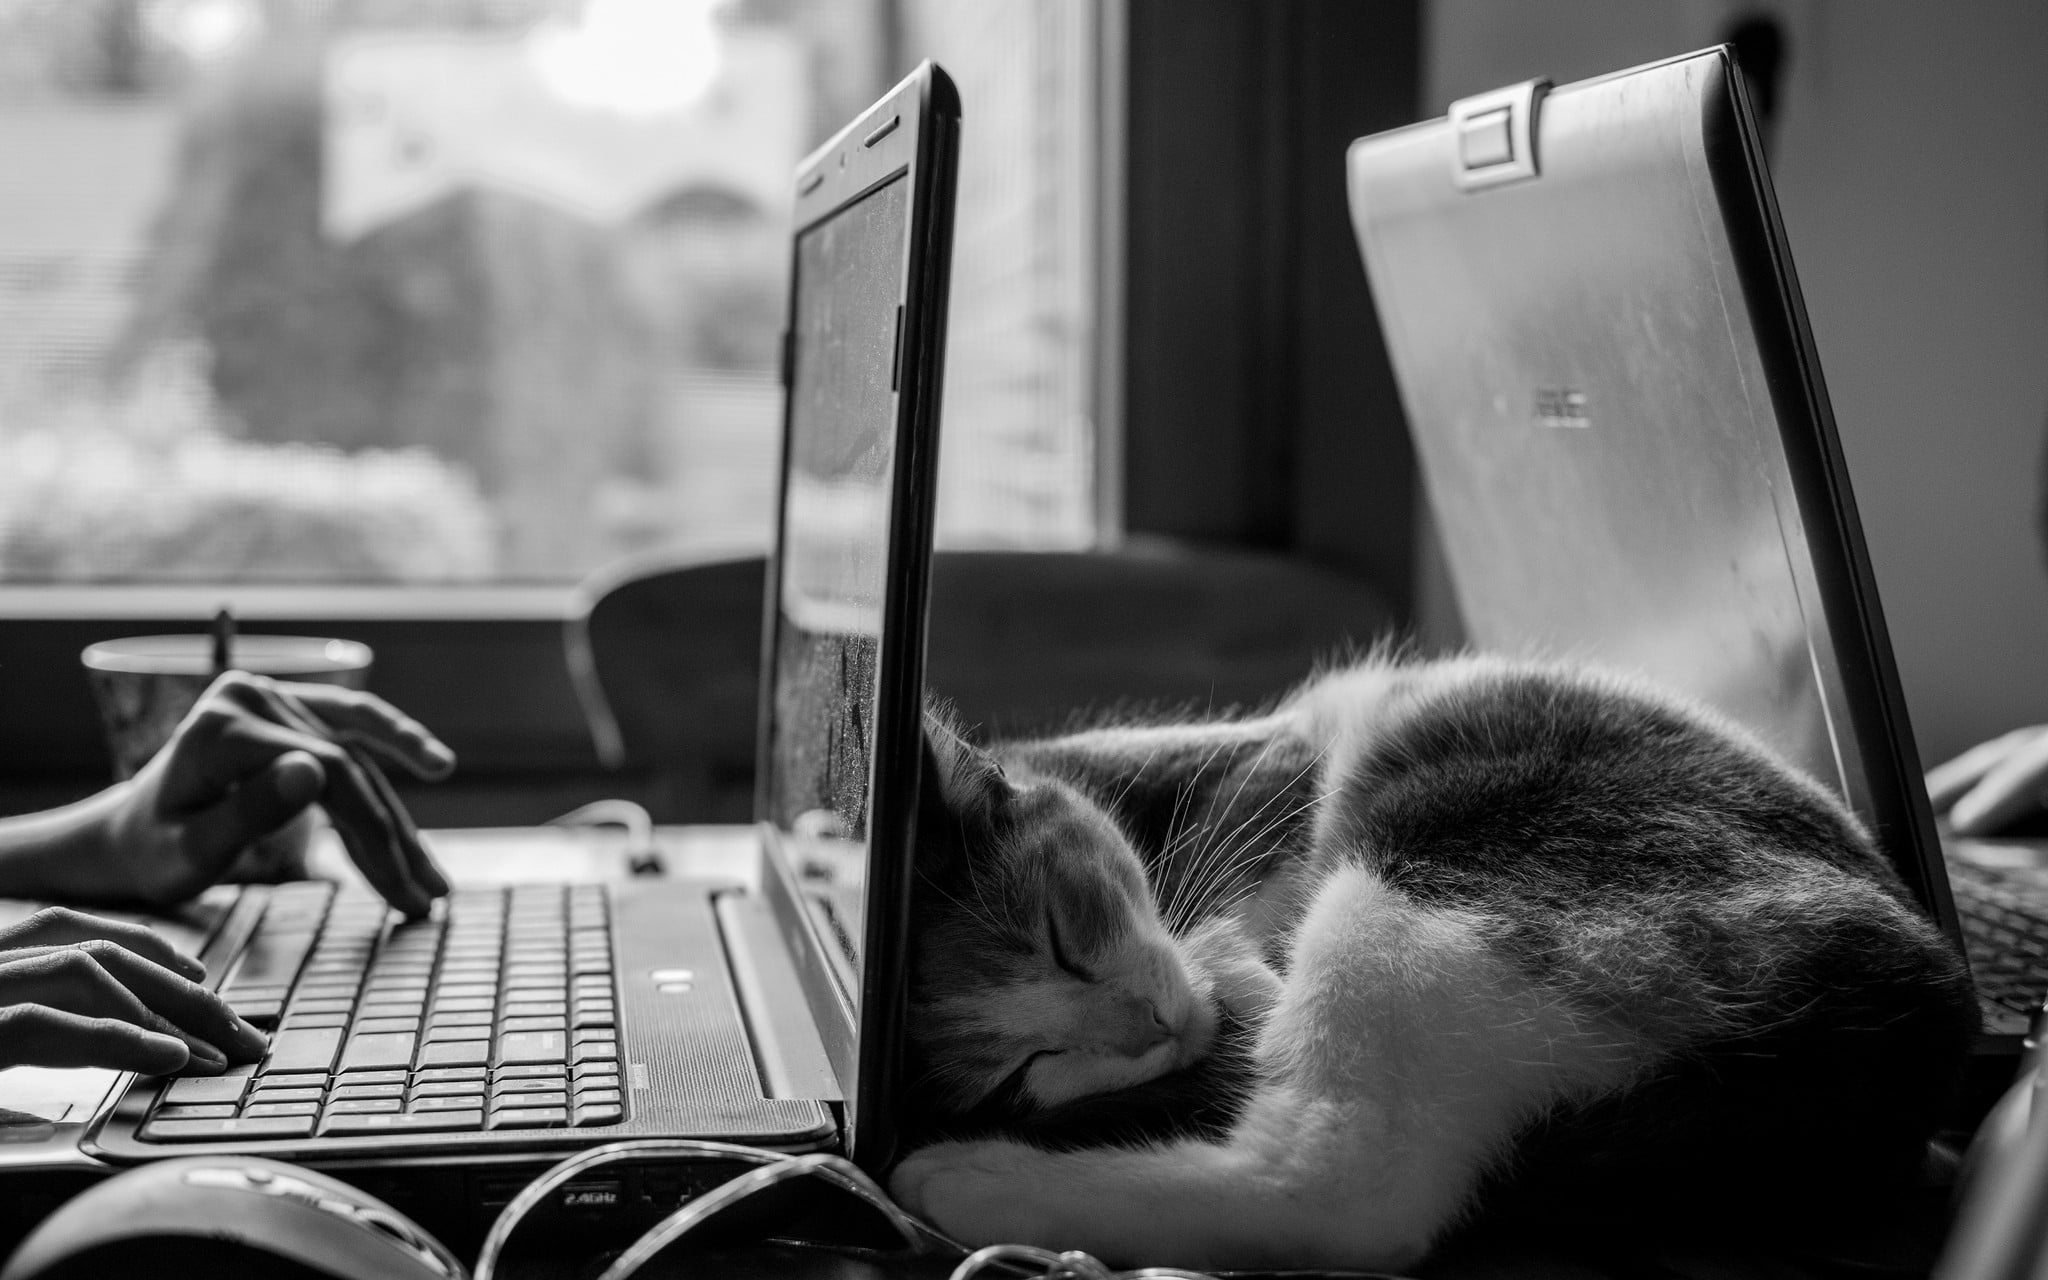 short-fur cat, monochrome, cat, desk, laptop